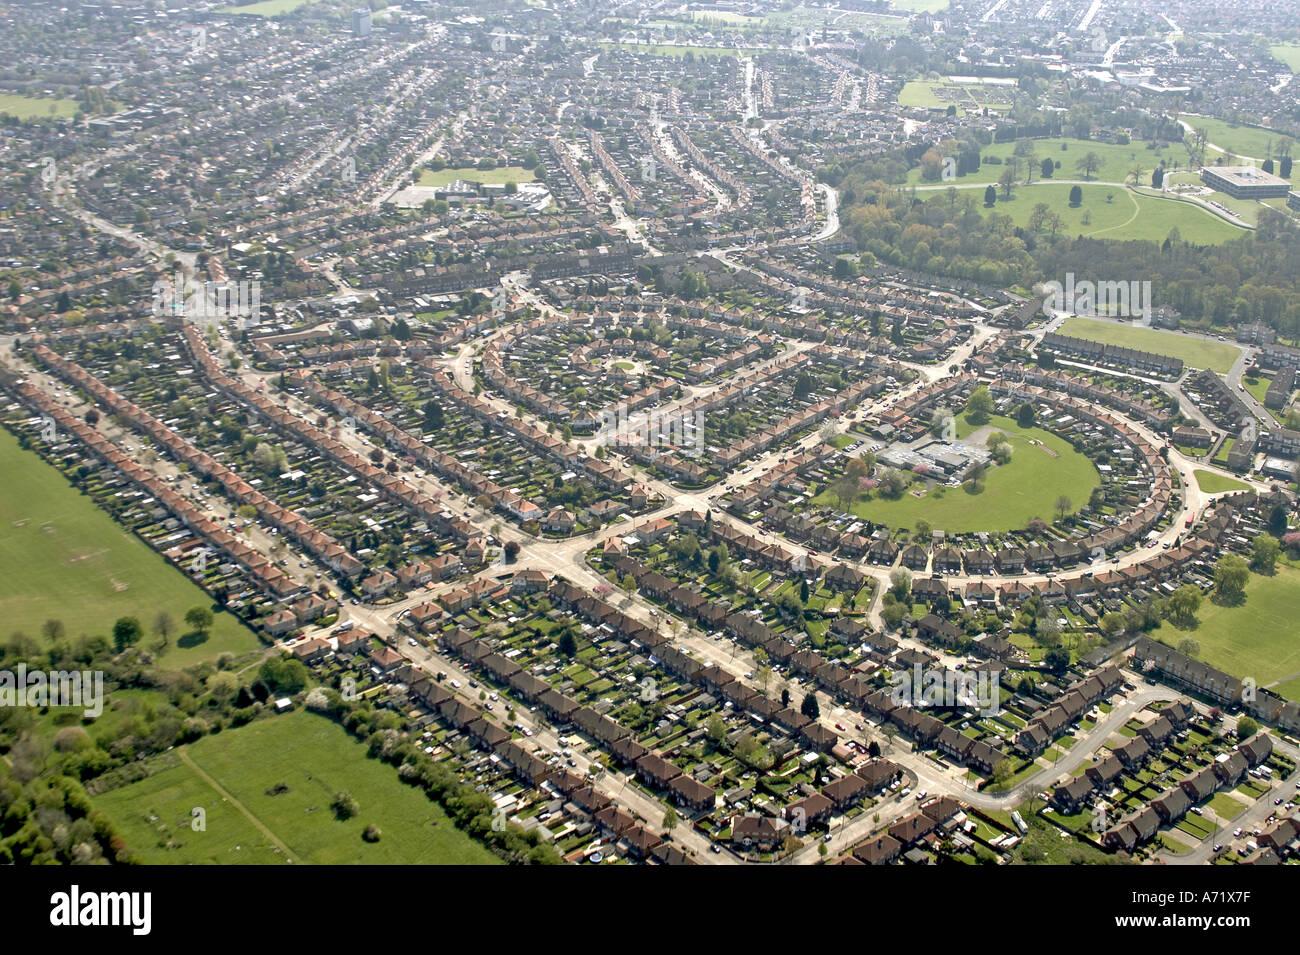 Haut niveau de l'antenne vue oblique de maisons et la banlieue de Hillingdon à Hedgewood École et Hayes Park London UB4 Angleterre 20 Banque D'Images